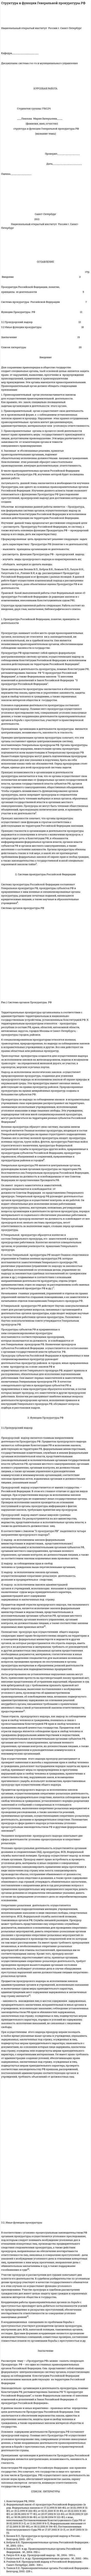 Cтруктура и функции Генеральной прокуратуры РФ